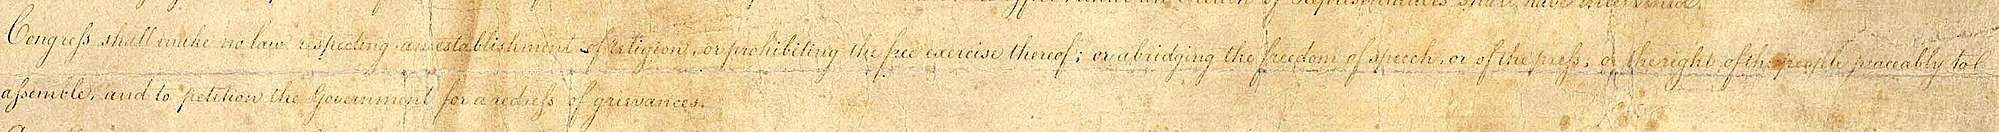 النسخة المكتوبة بخط اليد من وثيقة الحقوق المقترحة عام 1789، تم قص الصورة لإظهار فقط النص الذي سيصادق عليه ليصبح التعديل الأول